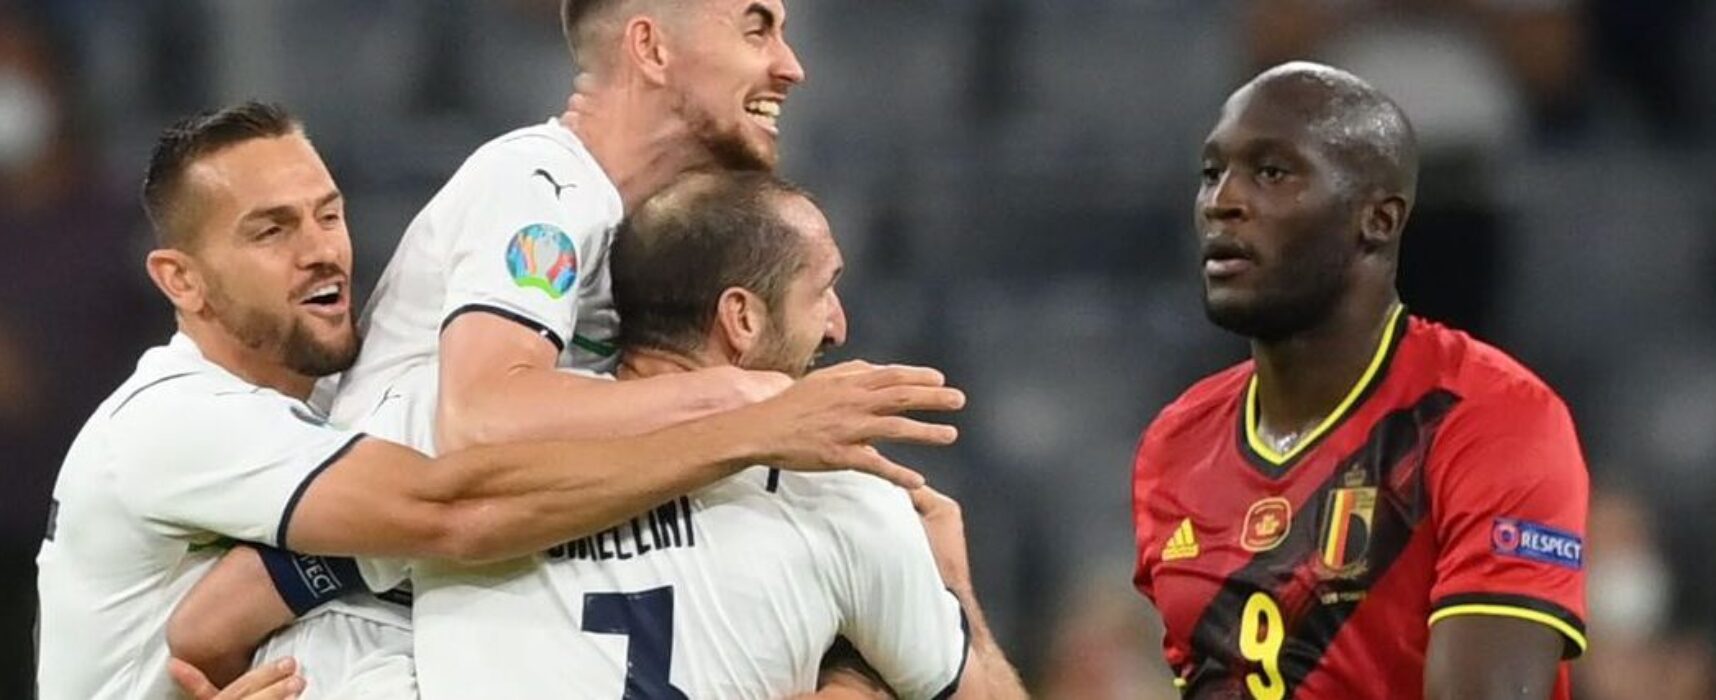 Itália vence Bélgica por 2 a 1 e alcança semifinais da Eurocopa